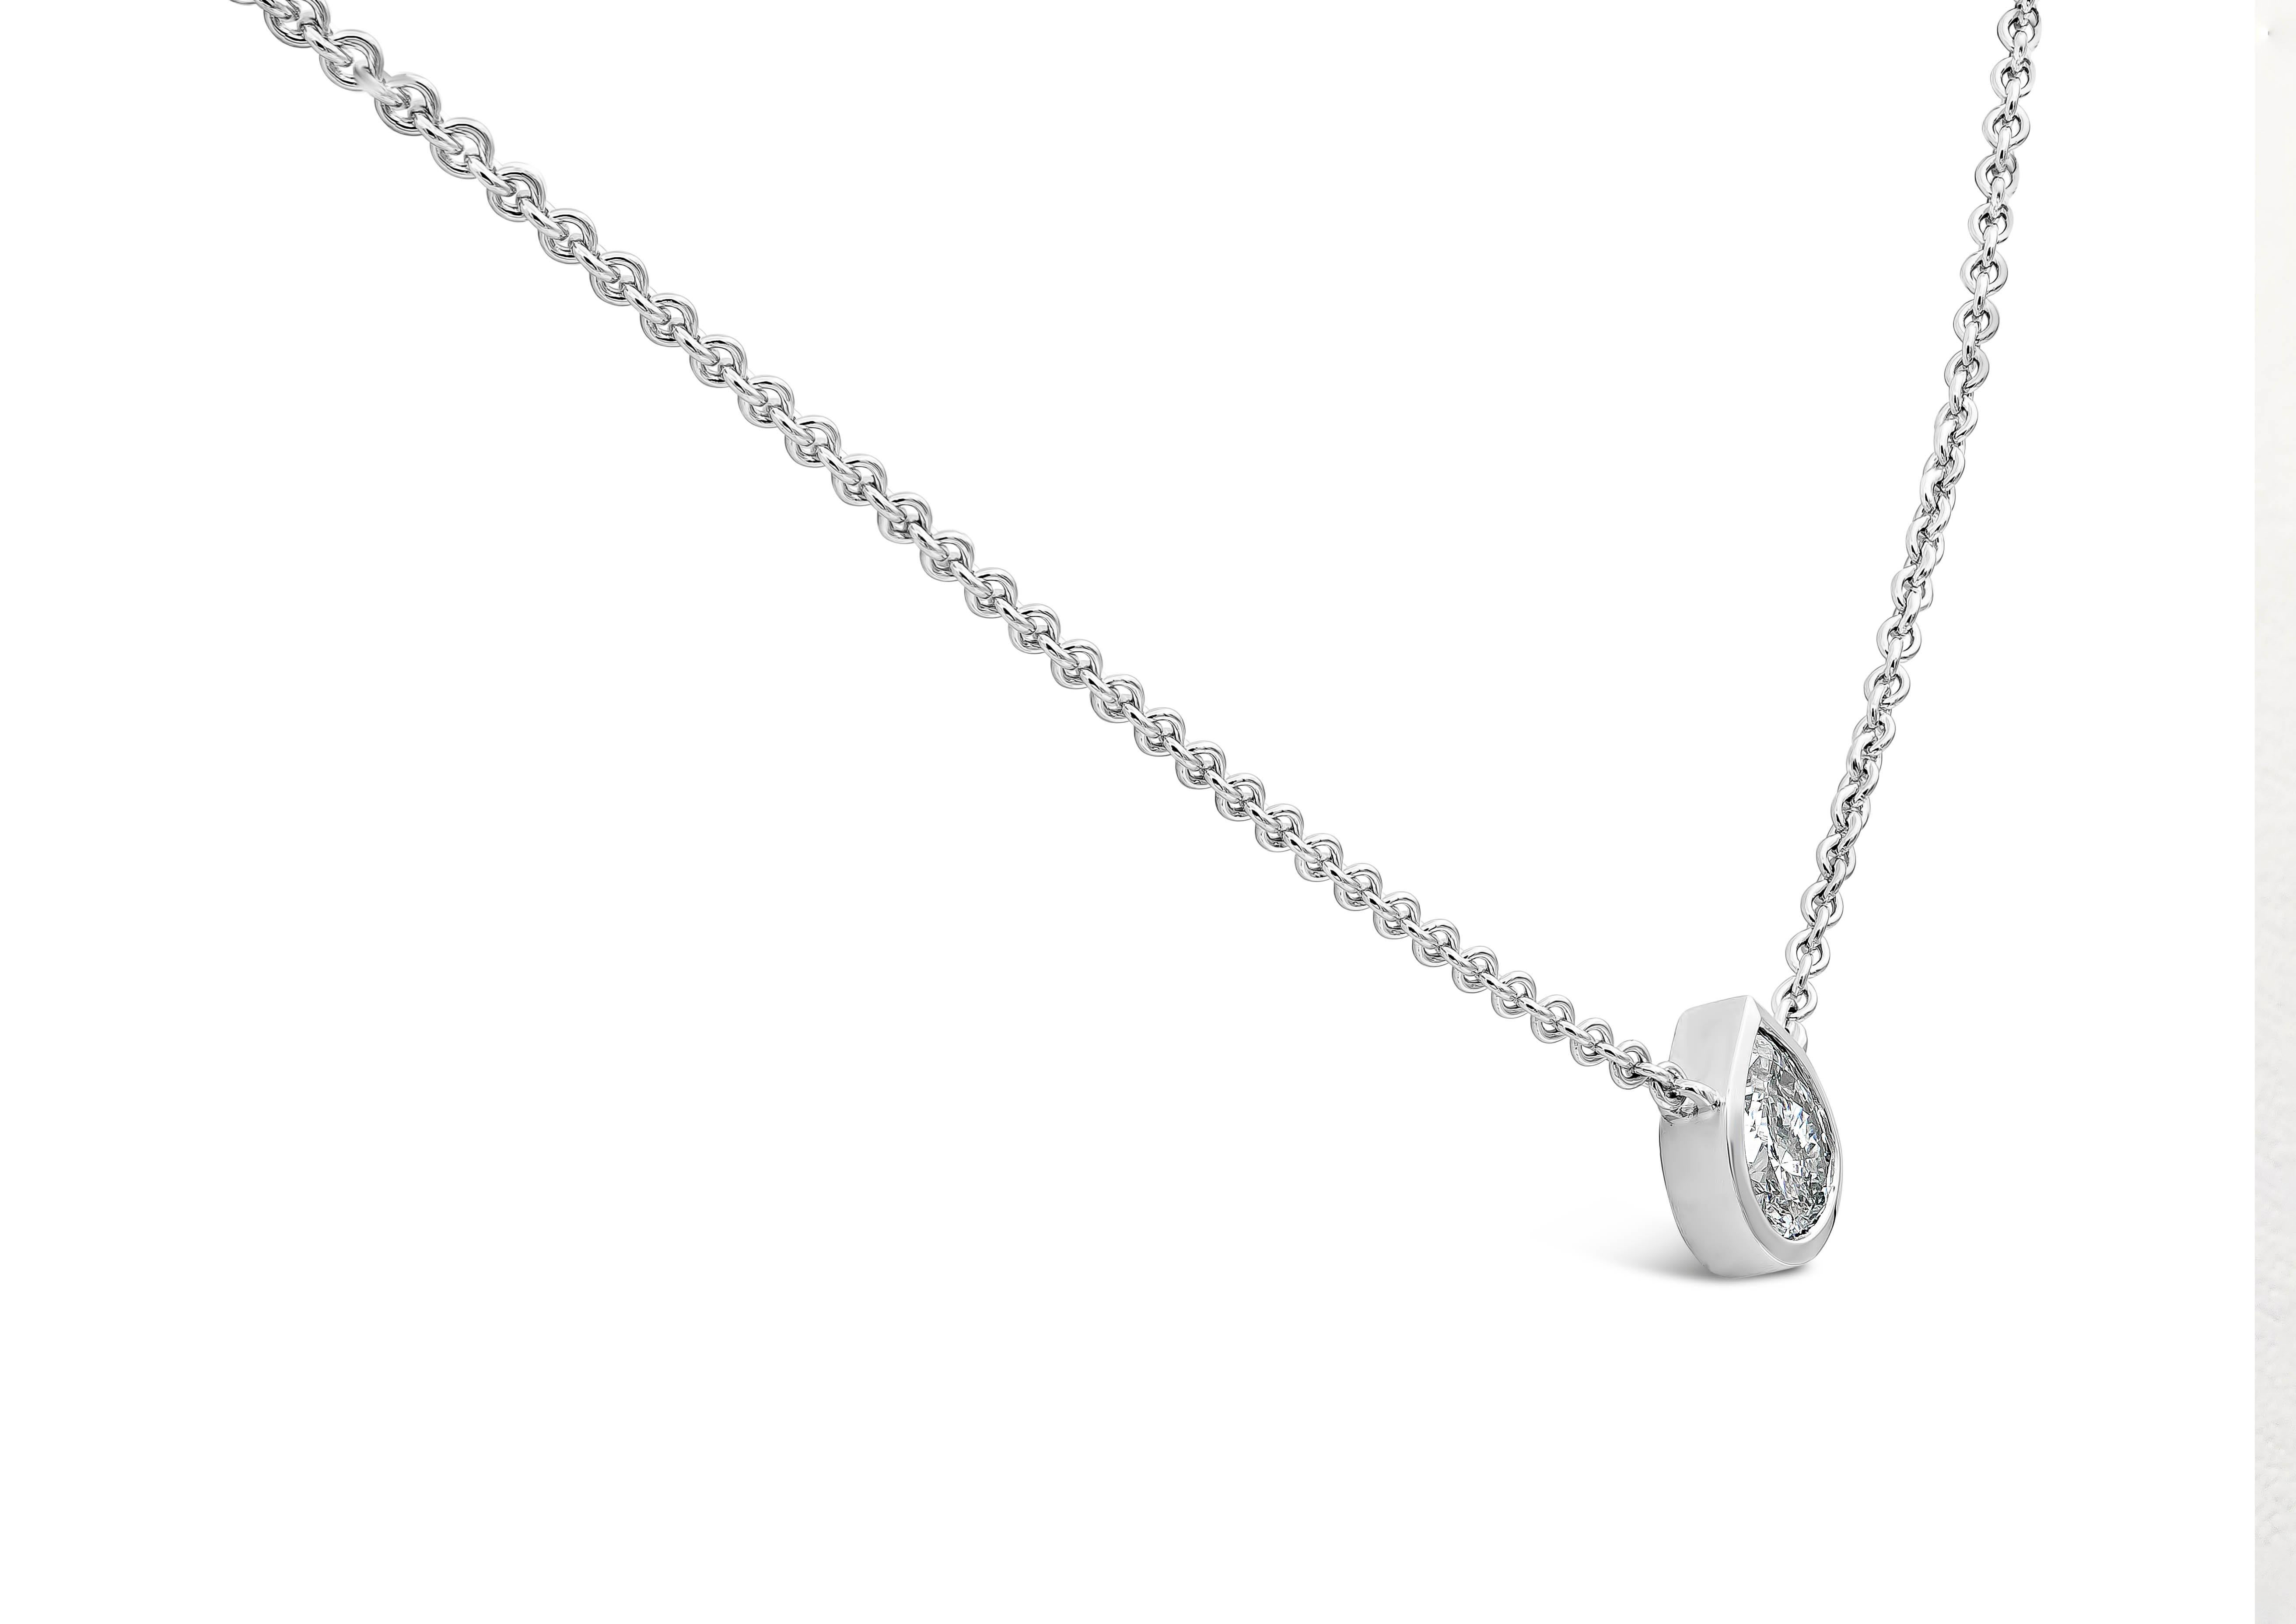 Un collier simple et classique mettant en valeur un diamant poire solitaire de 1,02 carats, de couleur E et de pureté SI2. Serti dans une lunette polie en or blanc 14K. Il est suspendu à une chaîne en or blanc réglable de 18 pouces. 

Roman Malakov